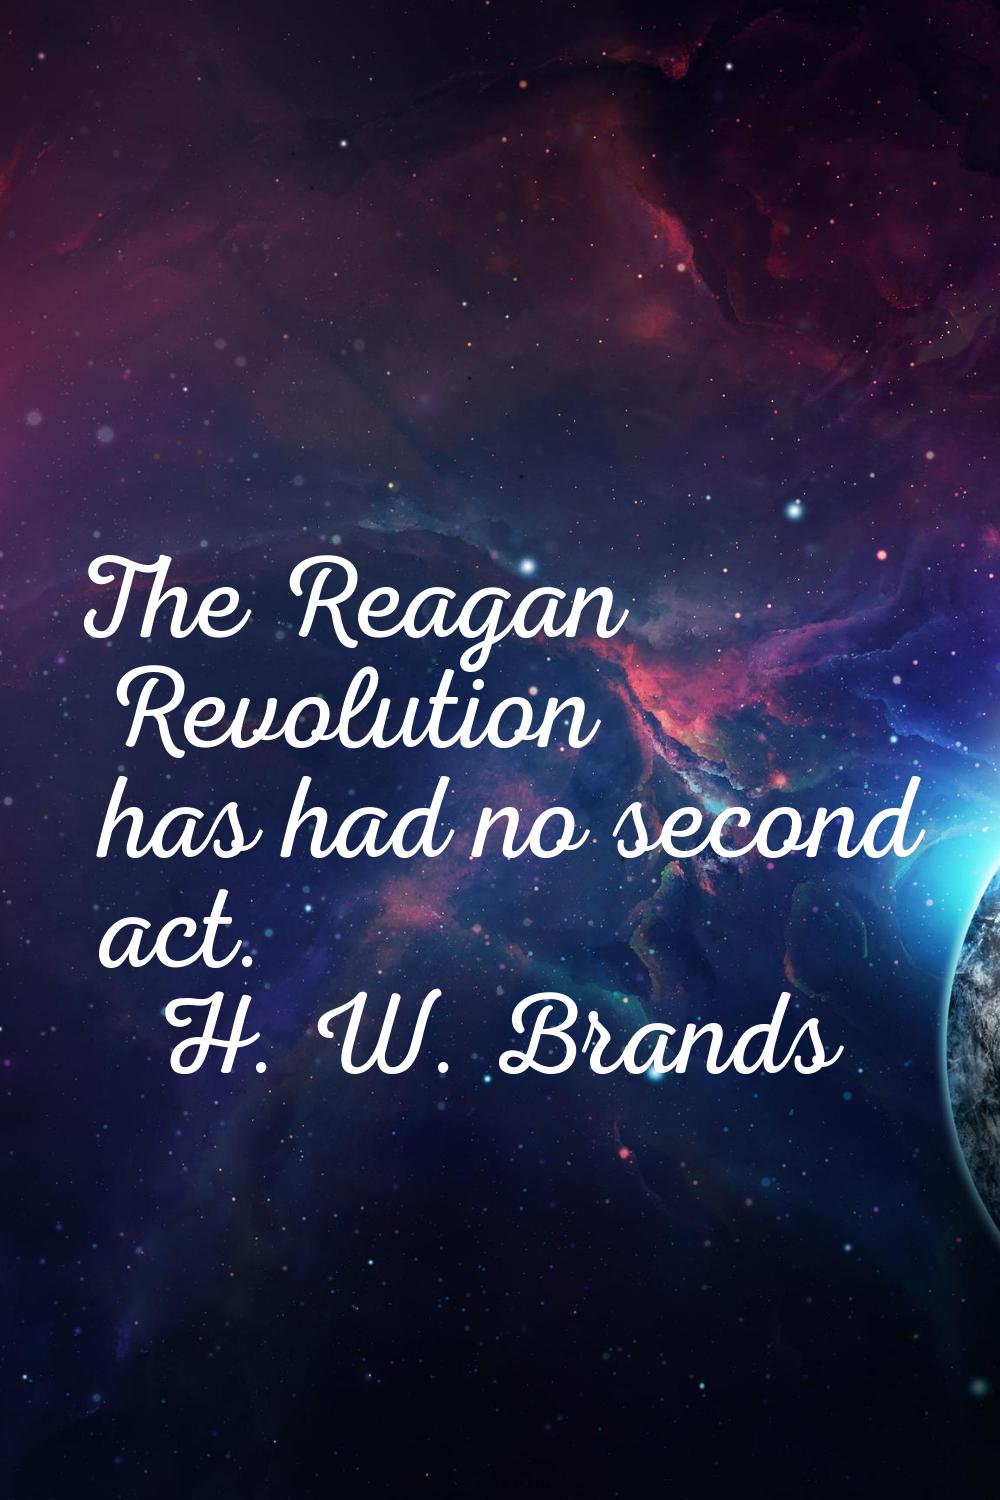 The Reagan Revolution has had no second act.